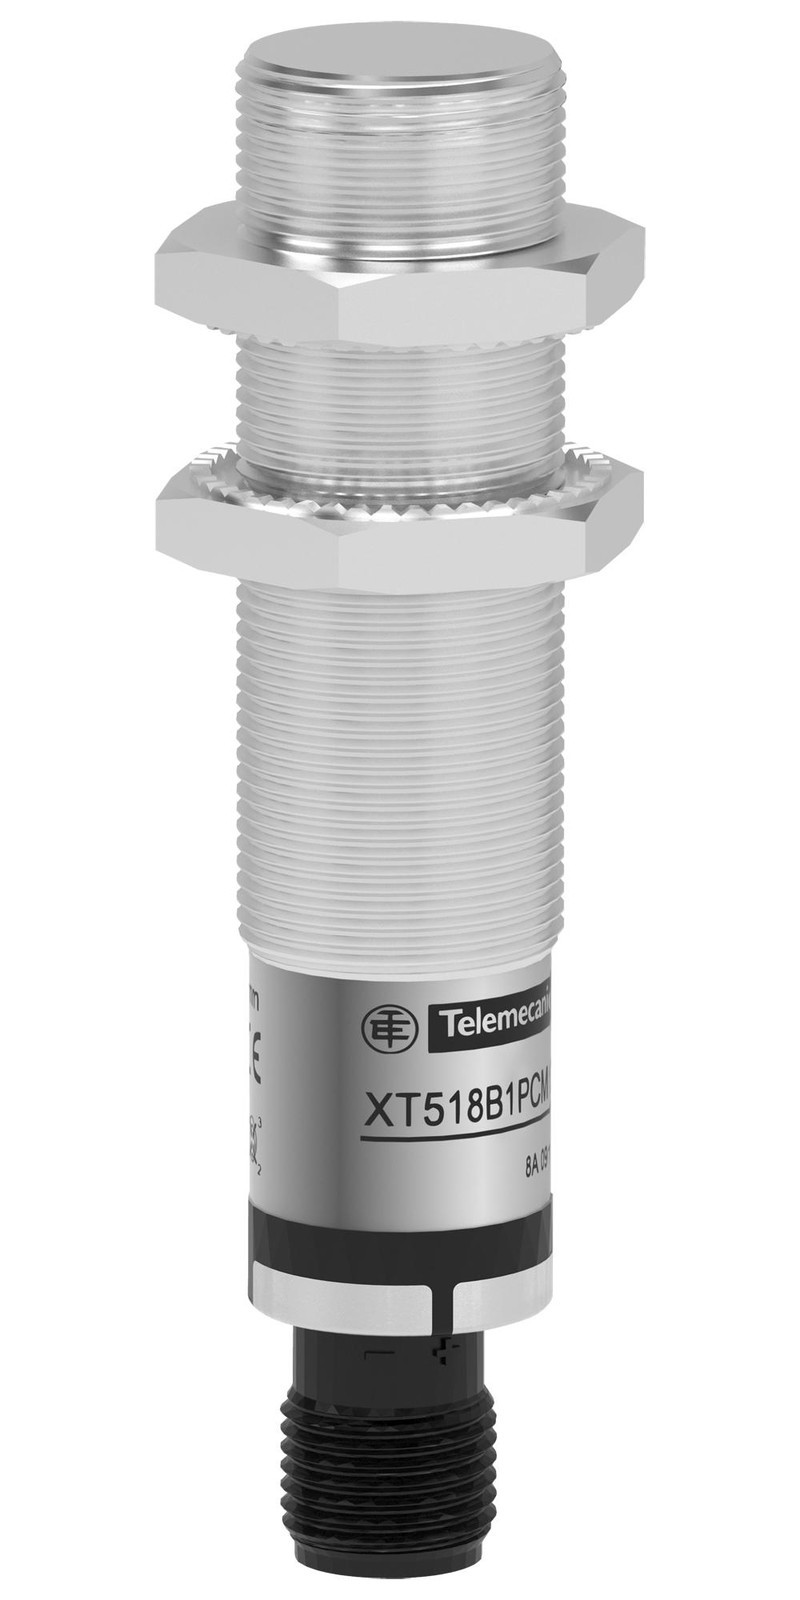 Telemecanique Sensors Xt518B1Pcm12 Sensor, Capacitoracitive Proximity, 5mm, 24Vdc